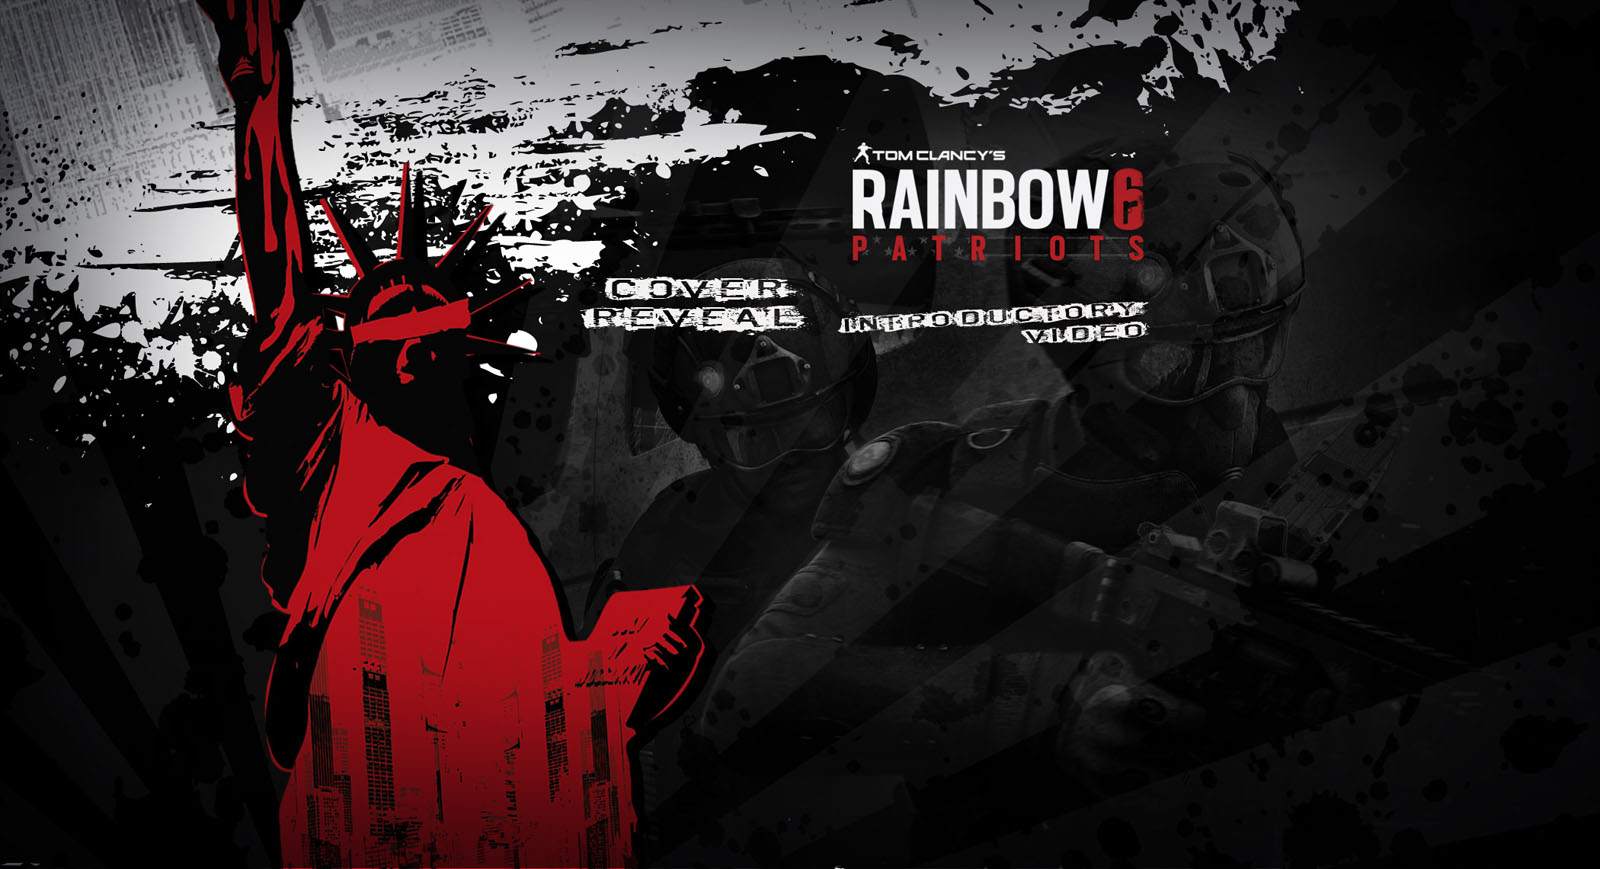 Description Rainbow Six Patriots 2013 Wallpaper is a hi res Wallpaper